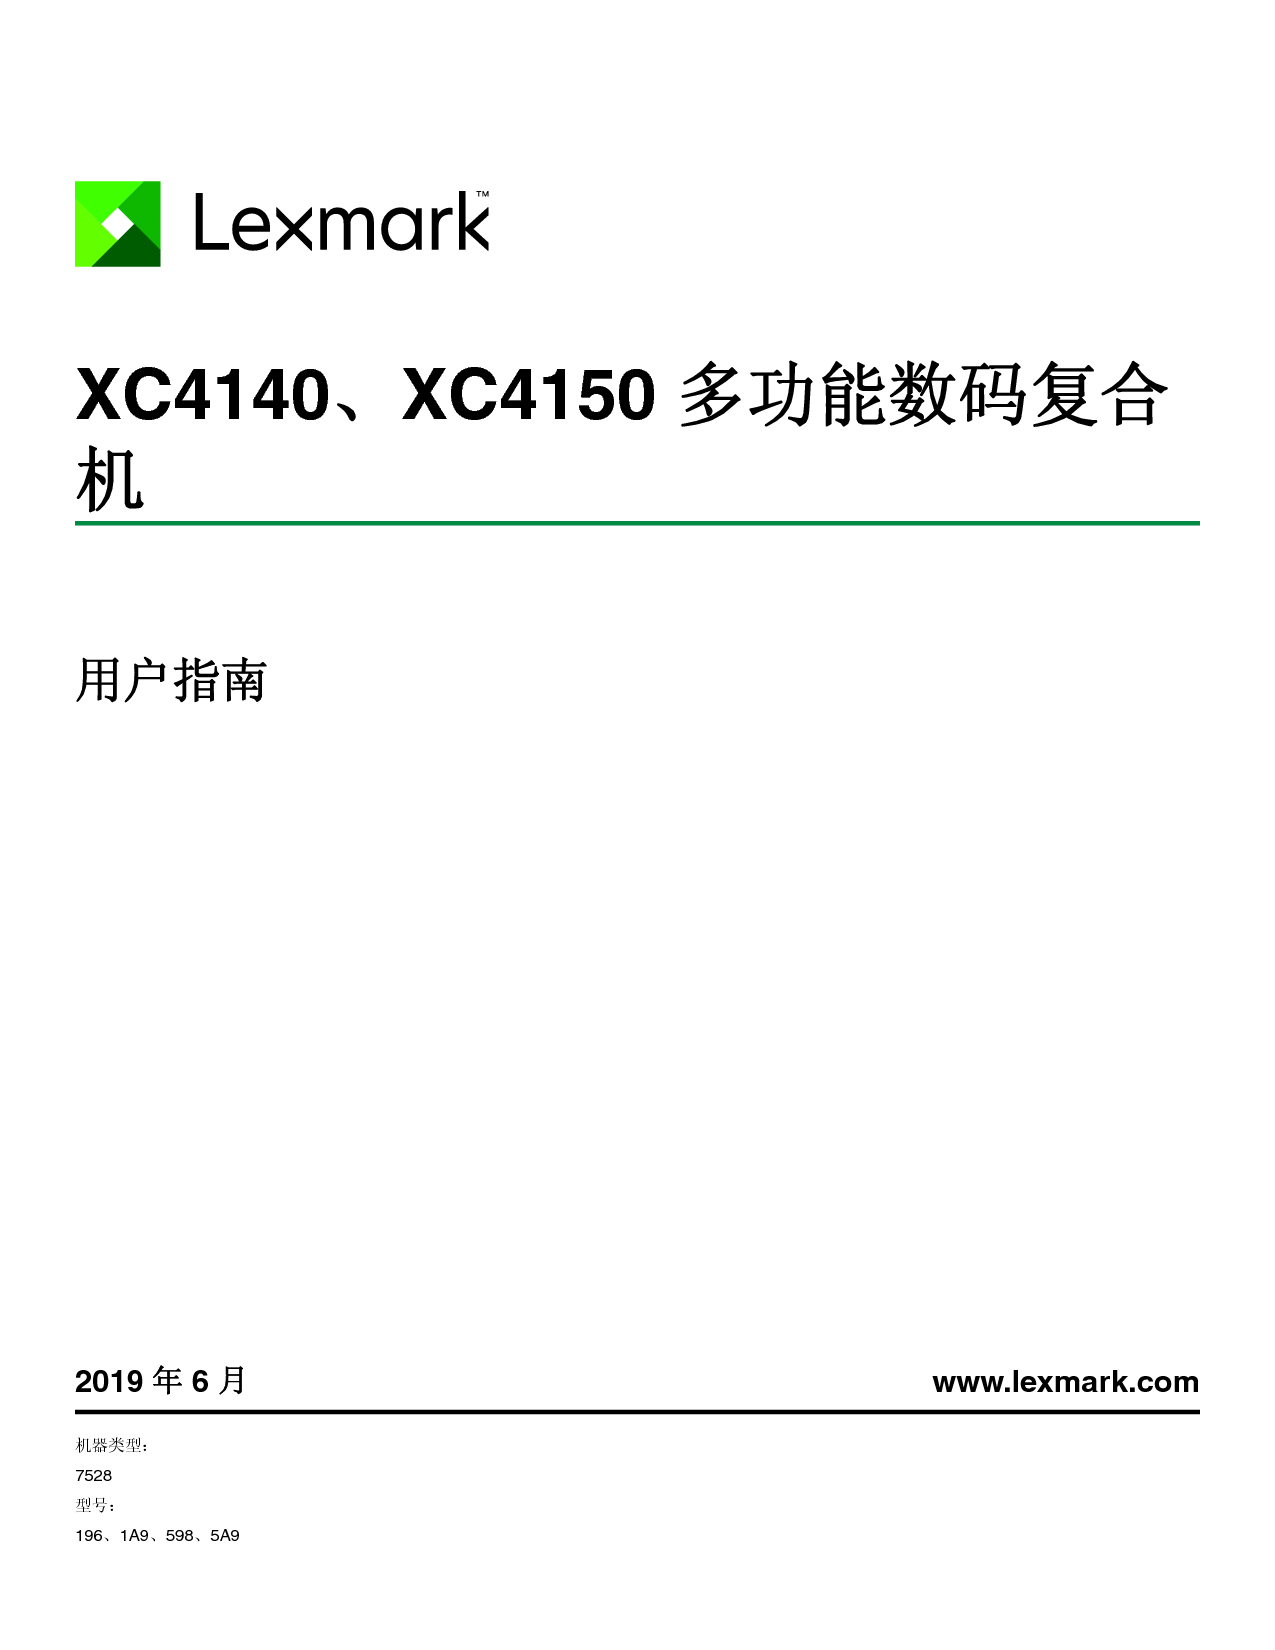 利盟 Lexmark XC4140 用户指南 封面